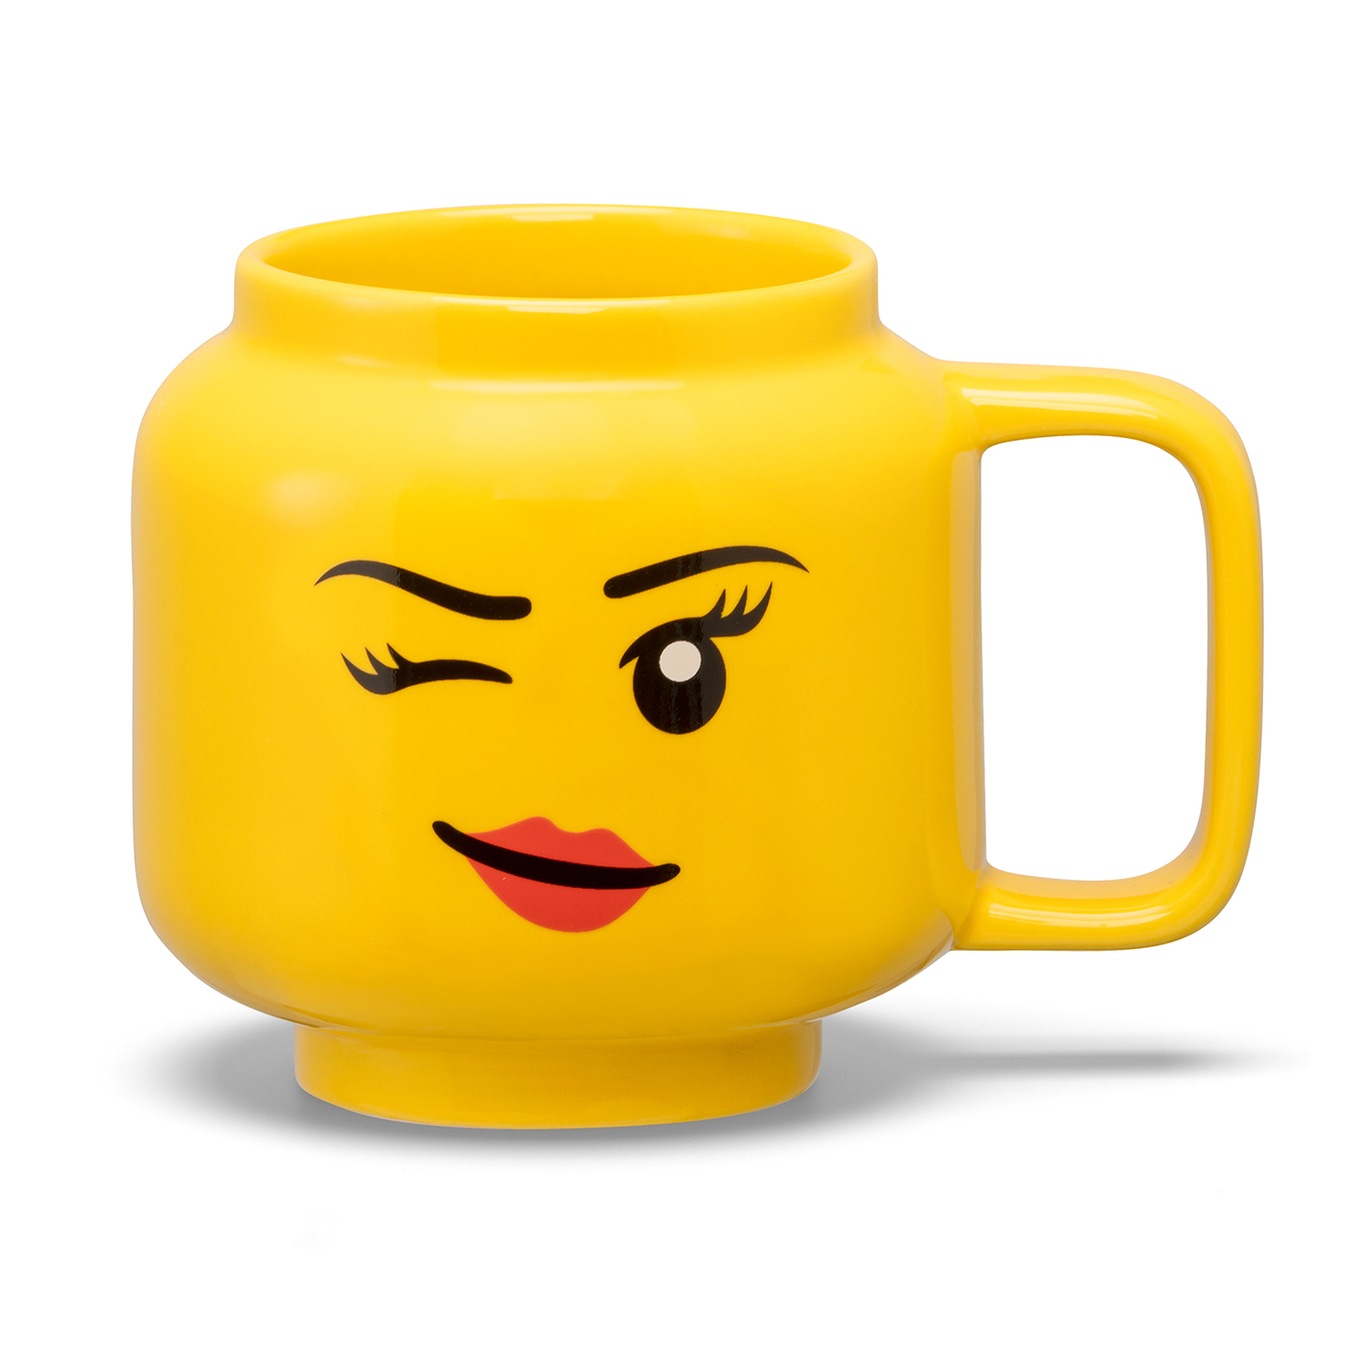 LEGO Ceramic Mug Small Boy Krus Gul, S